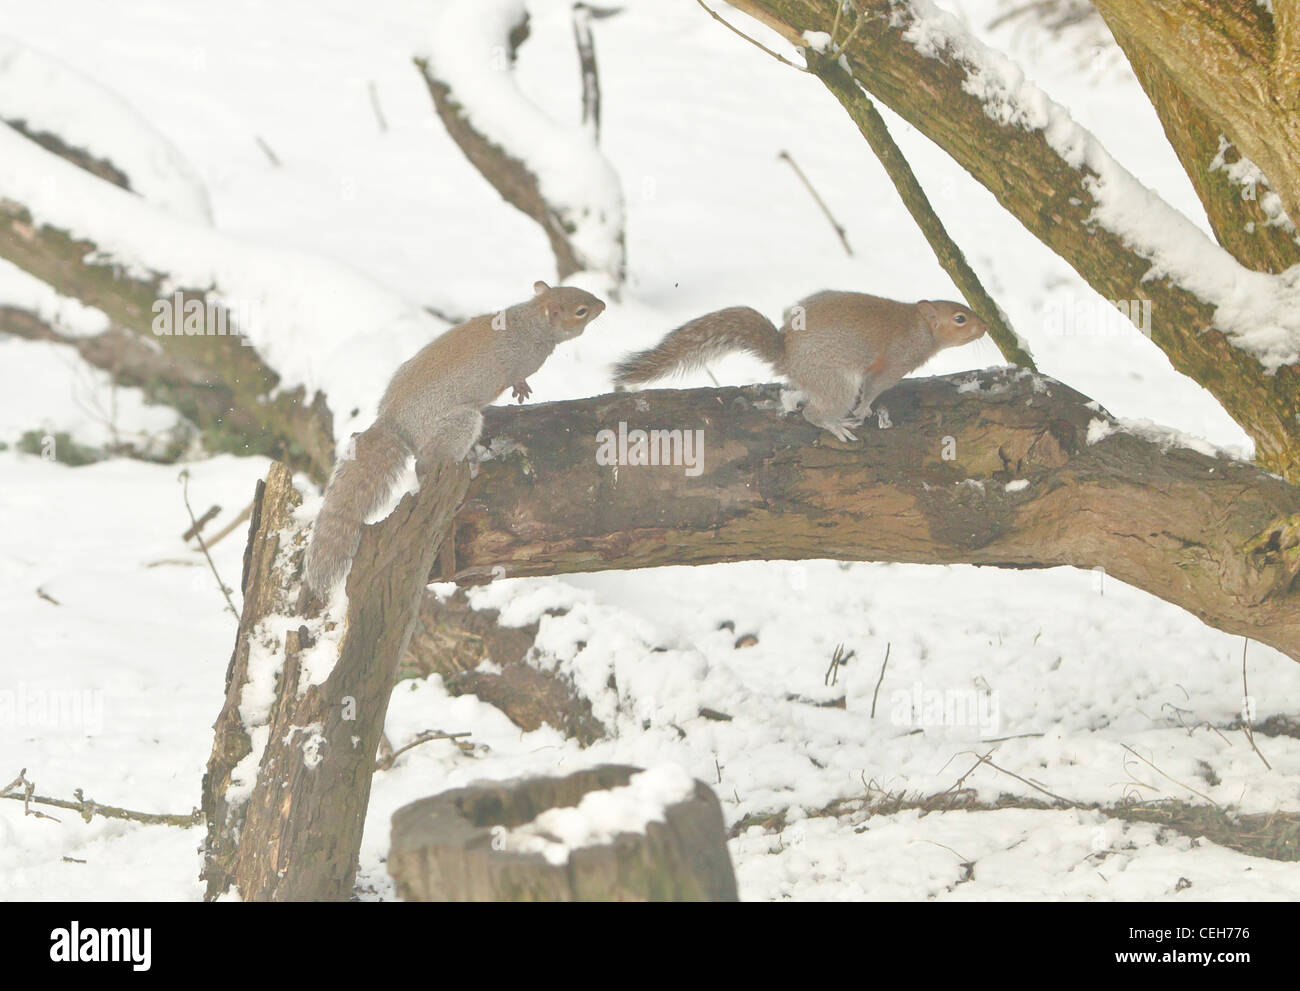 Graue Eichhörnchen Sciurus Carolinensis jagt andern Weg von seinem Territorium auf einem schneebedeckten Zweig im winter Stockfoto